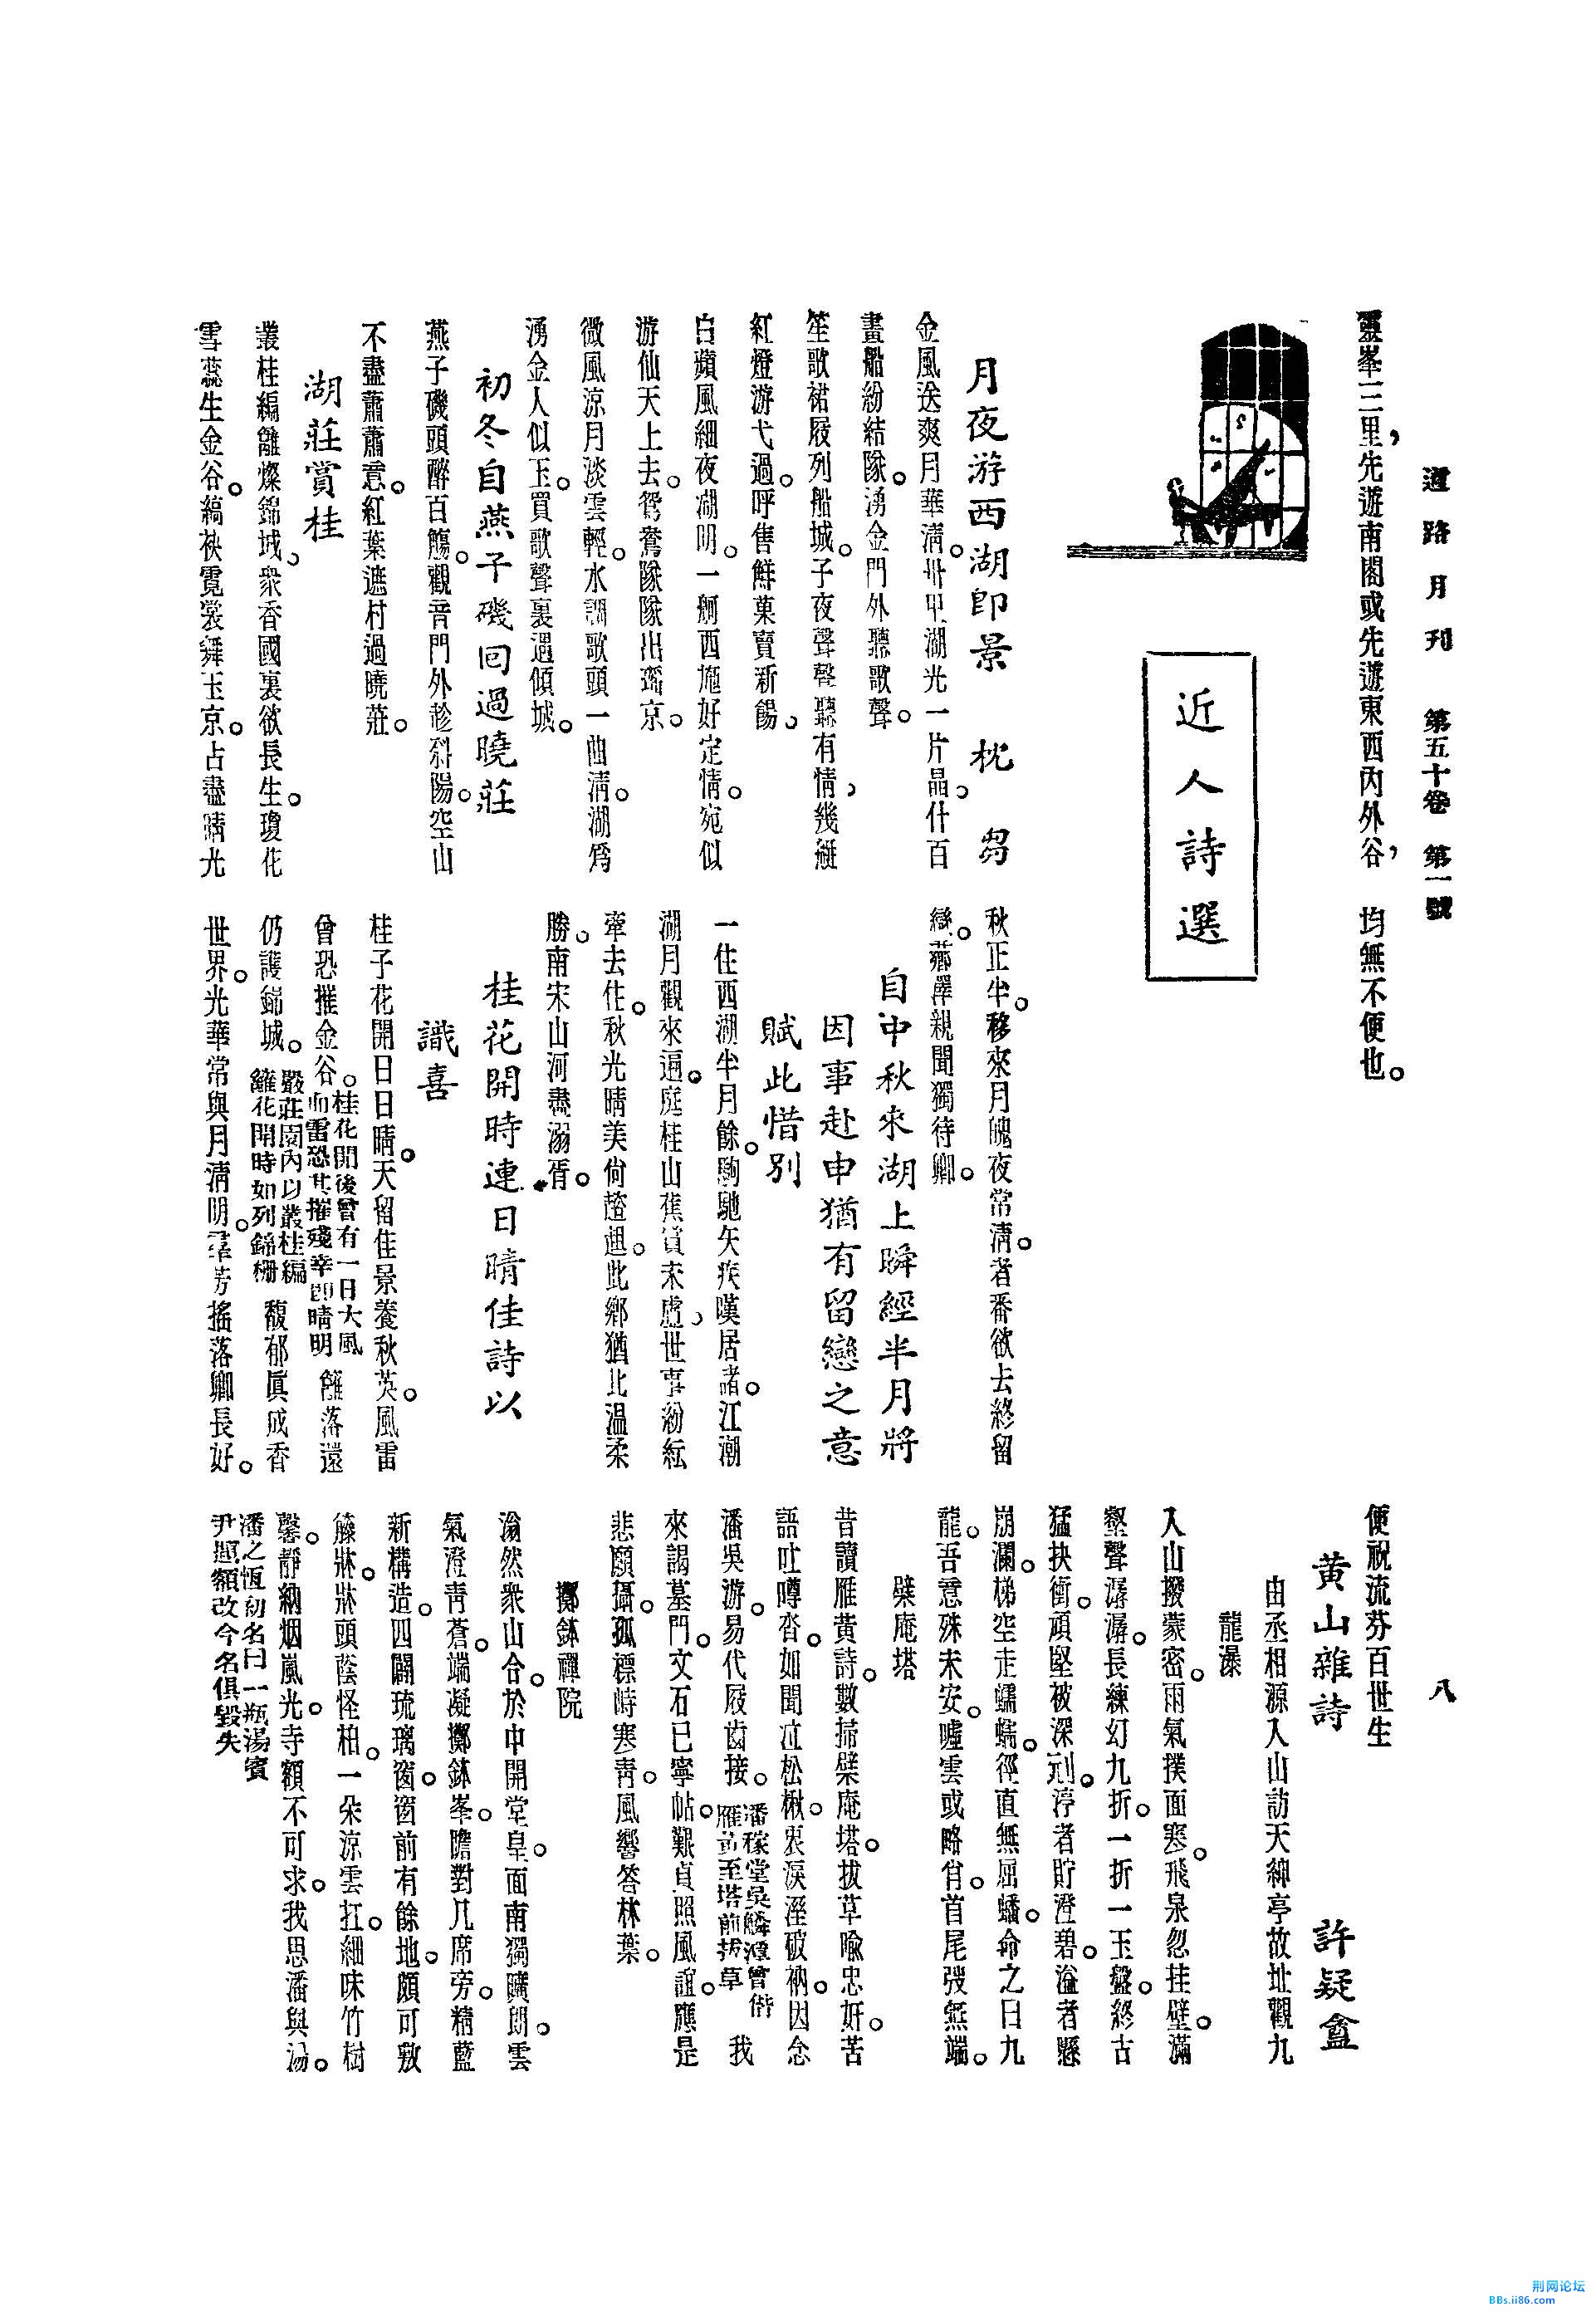 雁荡南阁探胜记[J].道路月刊,1936,(第1期)_页面_5.jpg